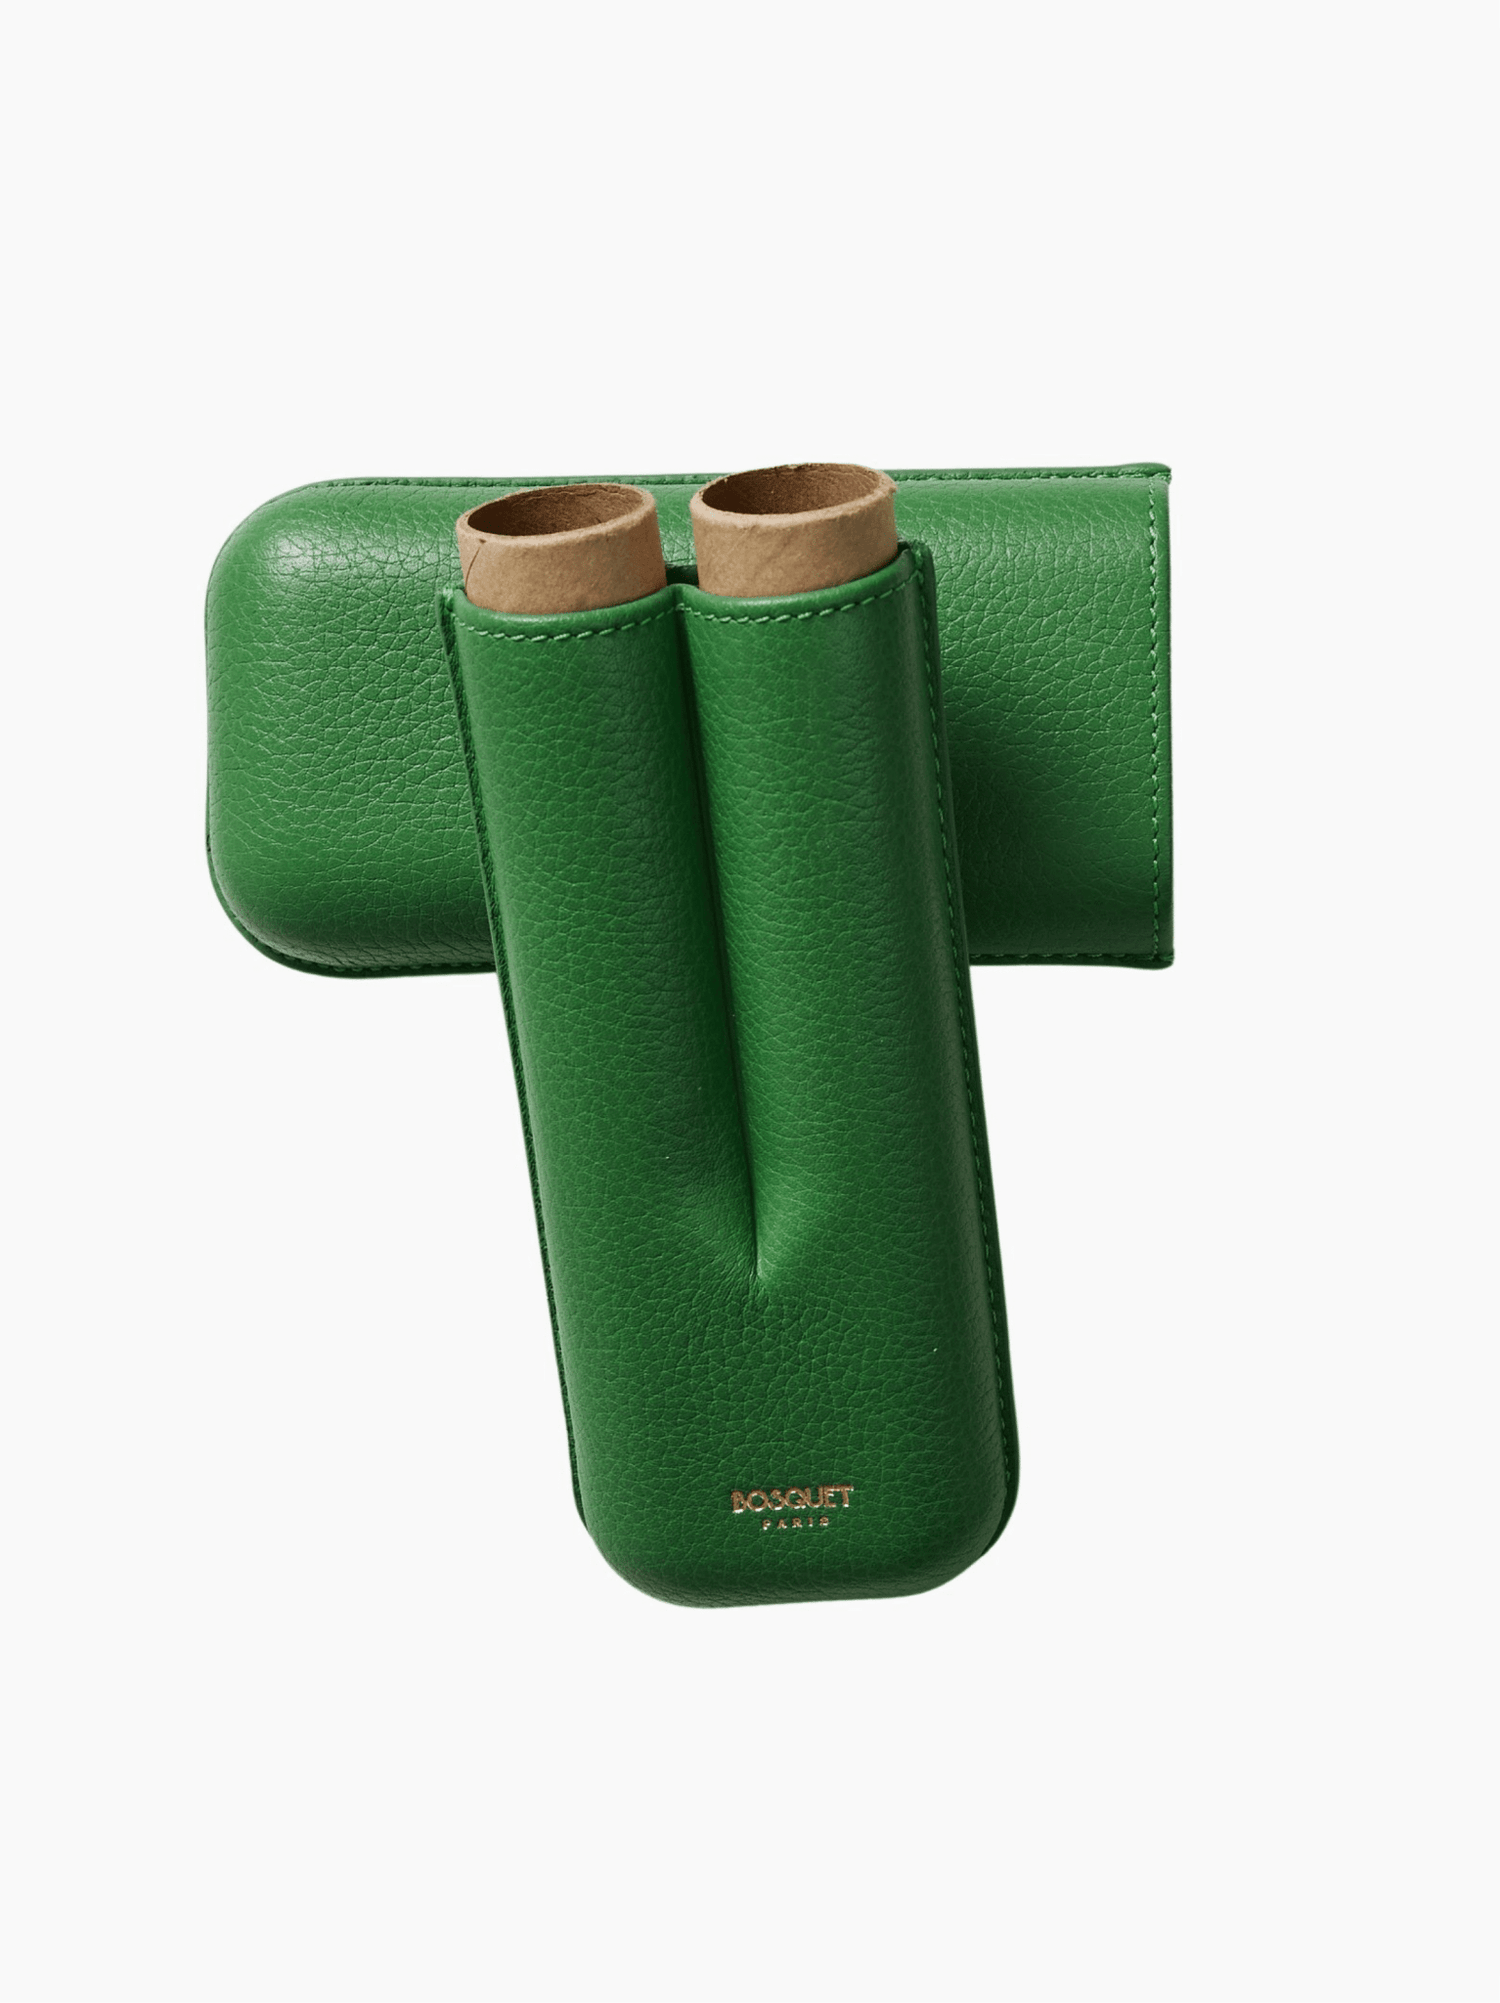 Green Double Cigar Case